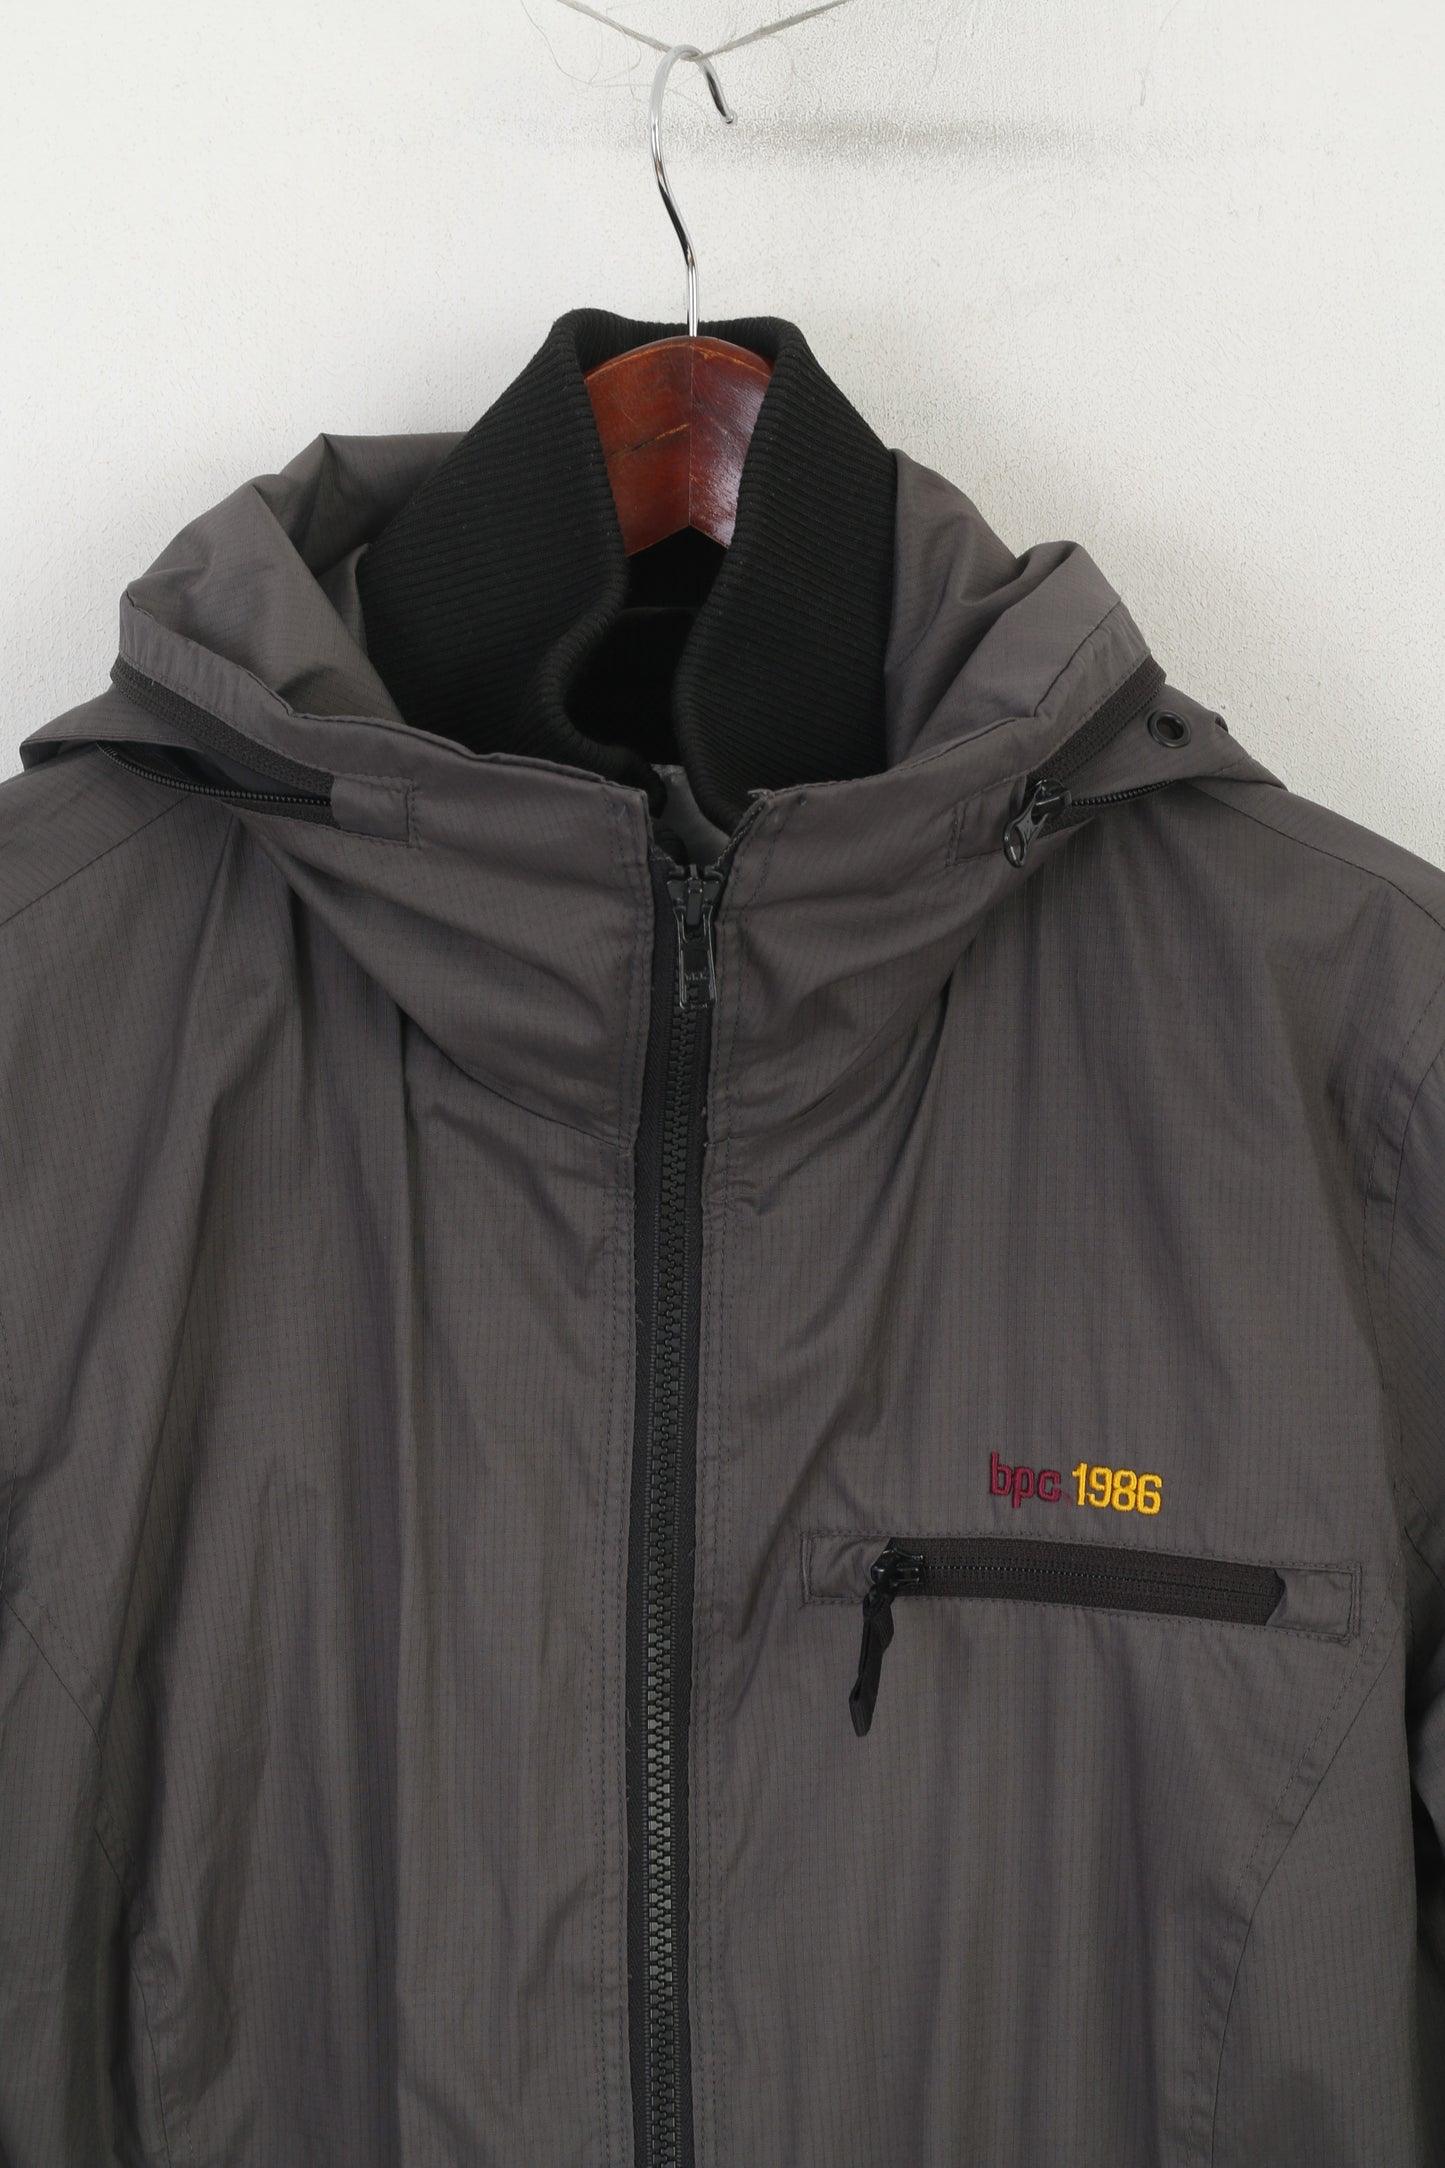 Bonprix Women 42 16 Jacket Gray Outdoor Hooded Full Zip Adventure Top